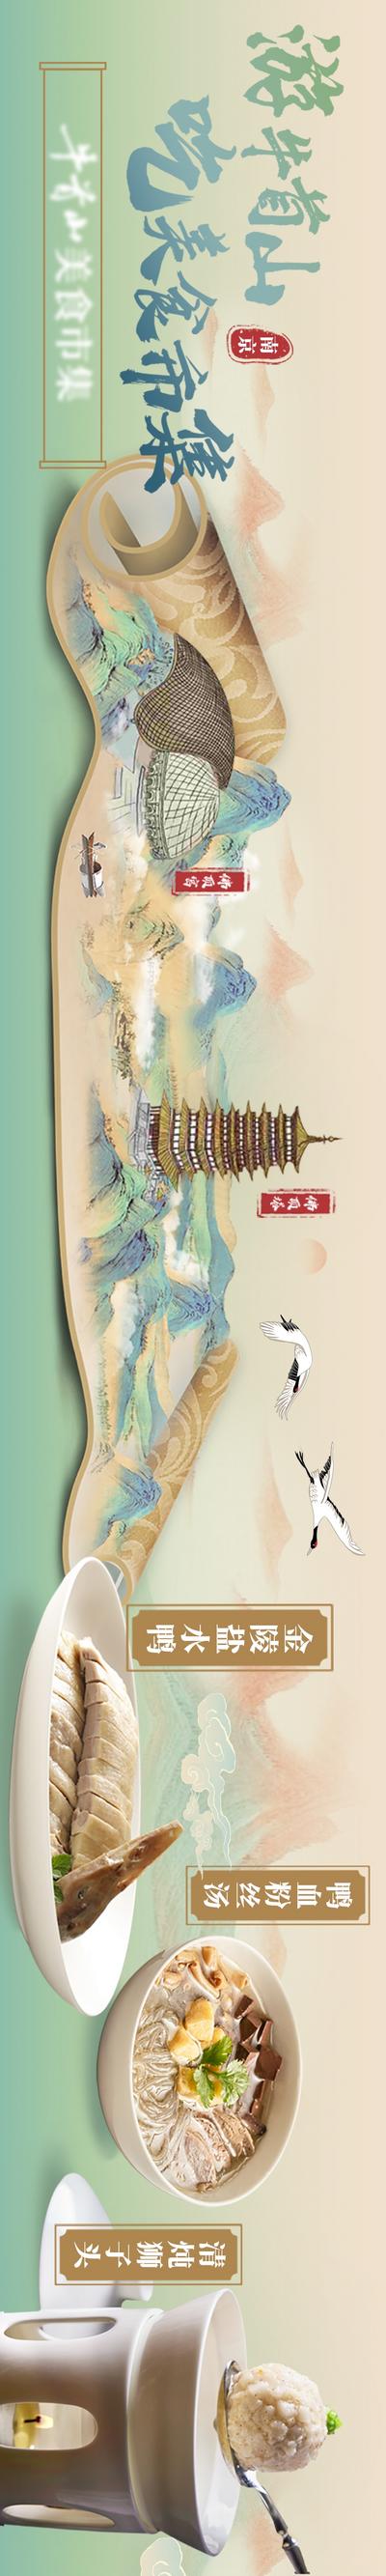 南门网 电商海报 淘宝海报 banner 大众点评 五连图 新中式 餐饮 卷轴